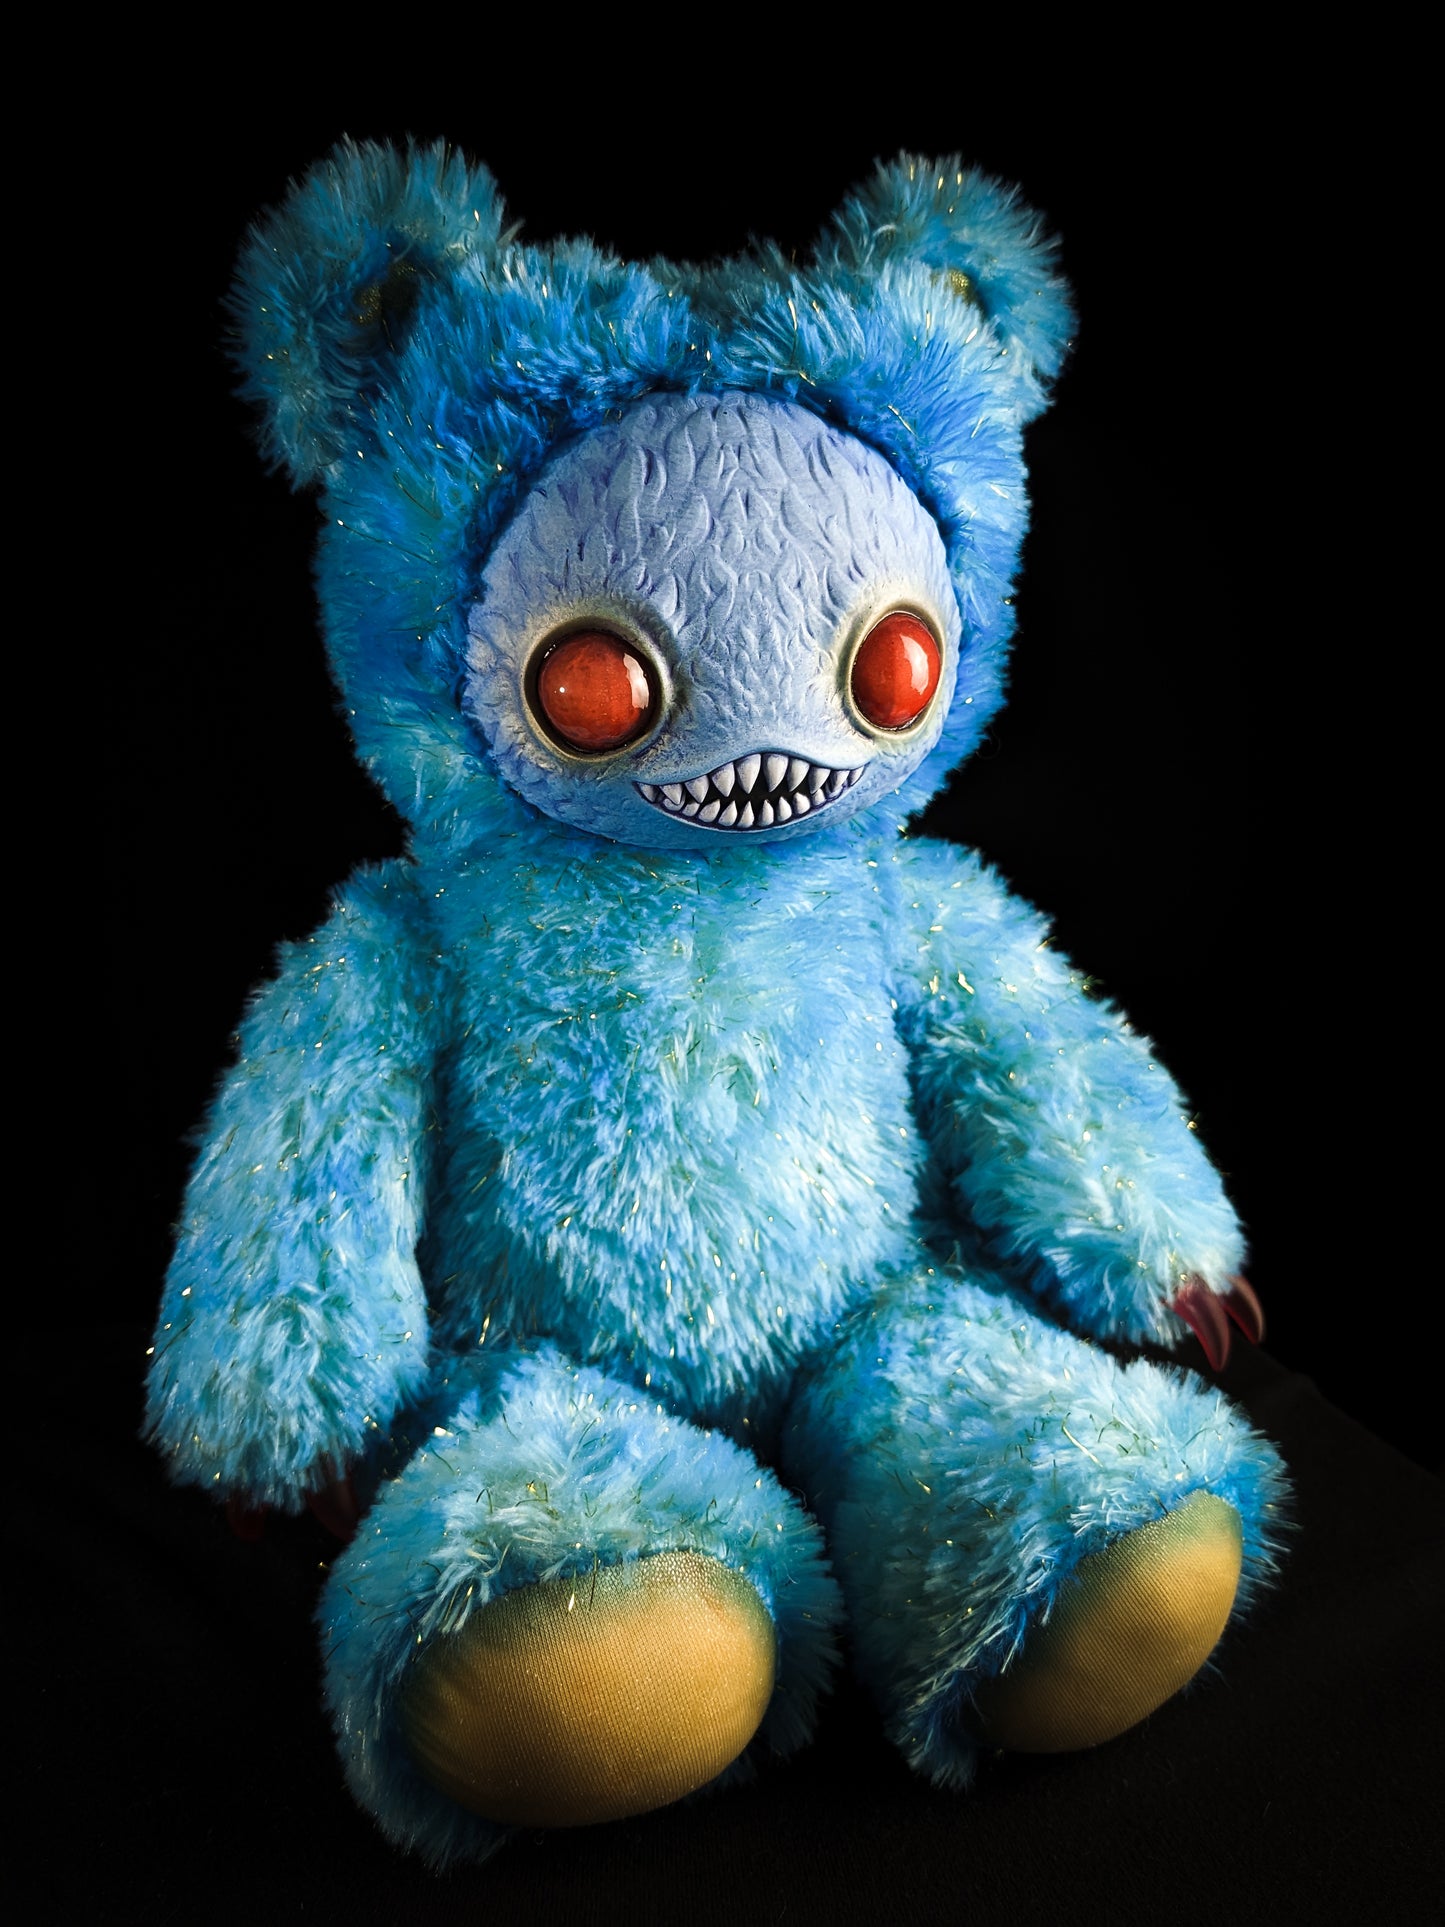 Nightfall Whispers: Ningen - Handmade Blue Creepy Cute Monster Art Doll Plush Toy for Gothic Goddesses